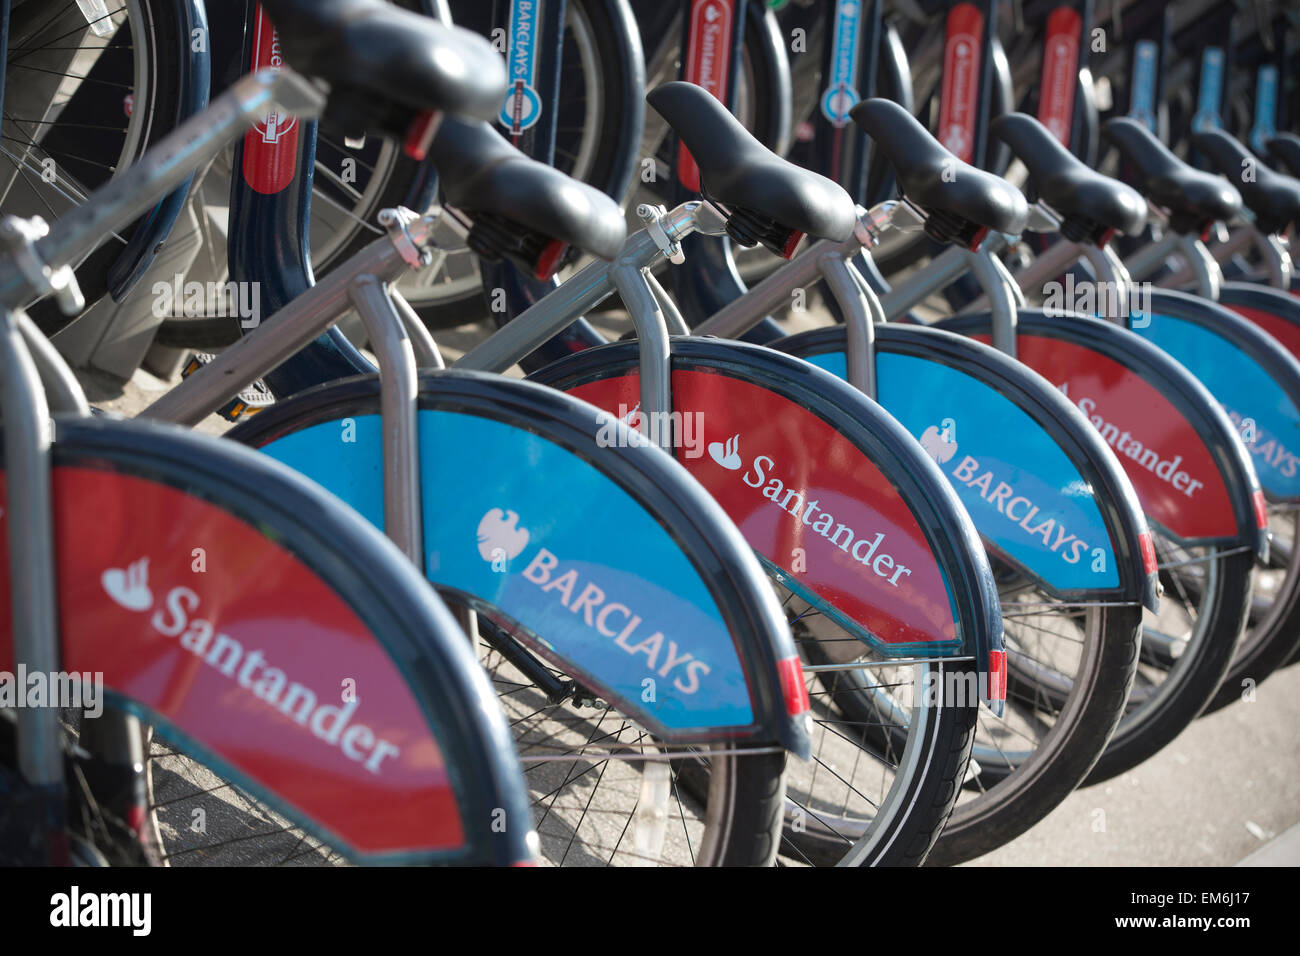 Londons blau "Boris Bikes" sollen rot angemalt unter einen sieben-Jahres-Sponsoring-Deal mit Santander Wert rund 7 Millionen Pfund pro Jahr, UK Stockfoto